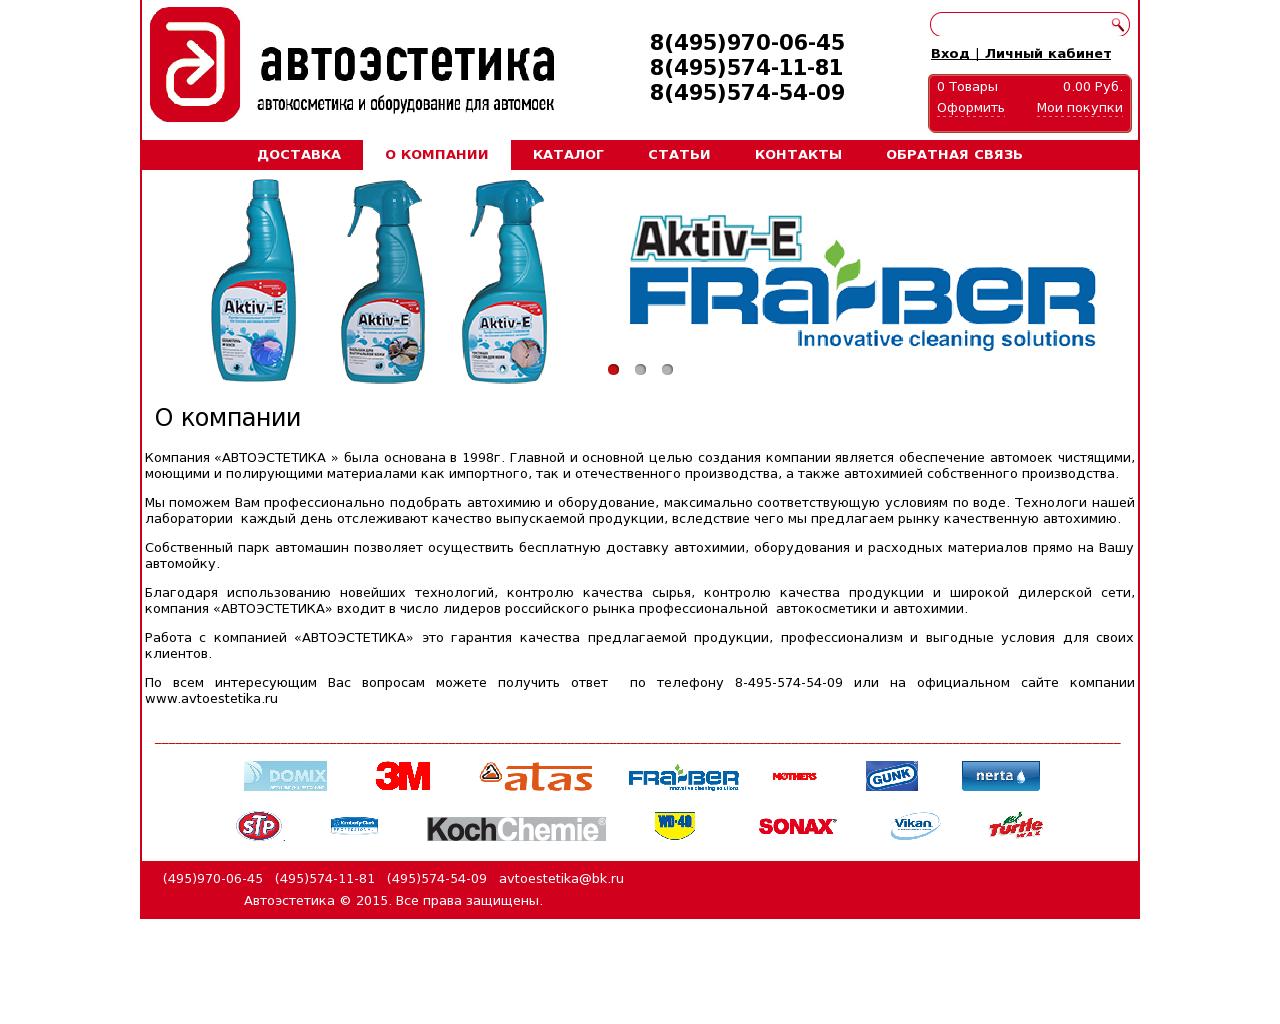 Изображение сайта avtoestetika.ru в разрешении 1280x1024